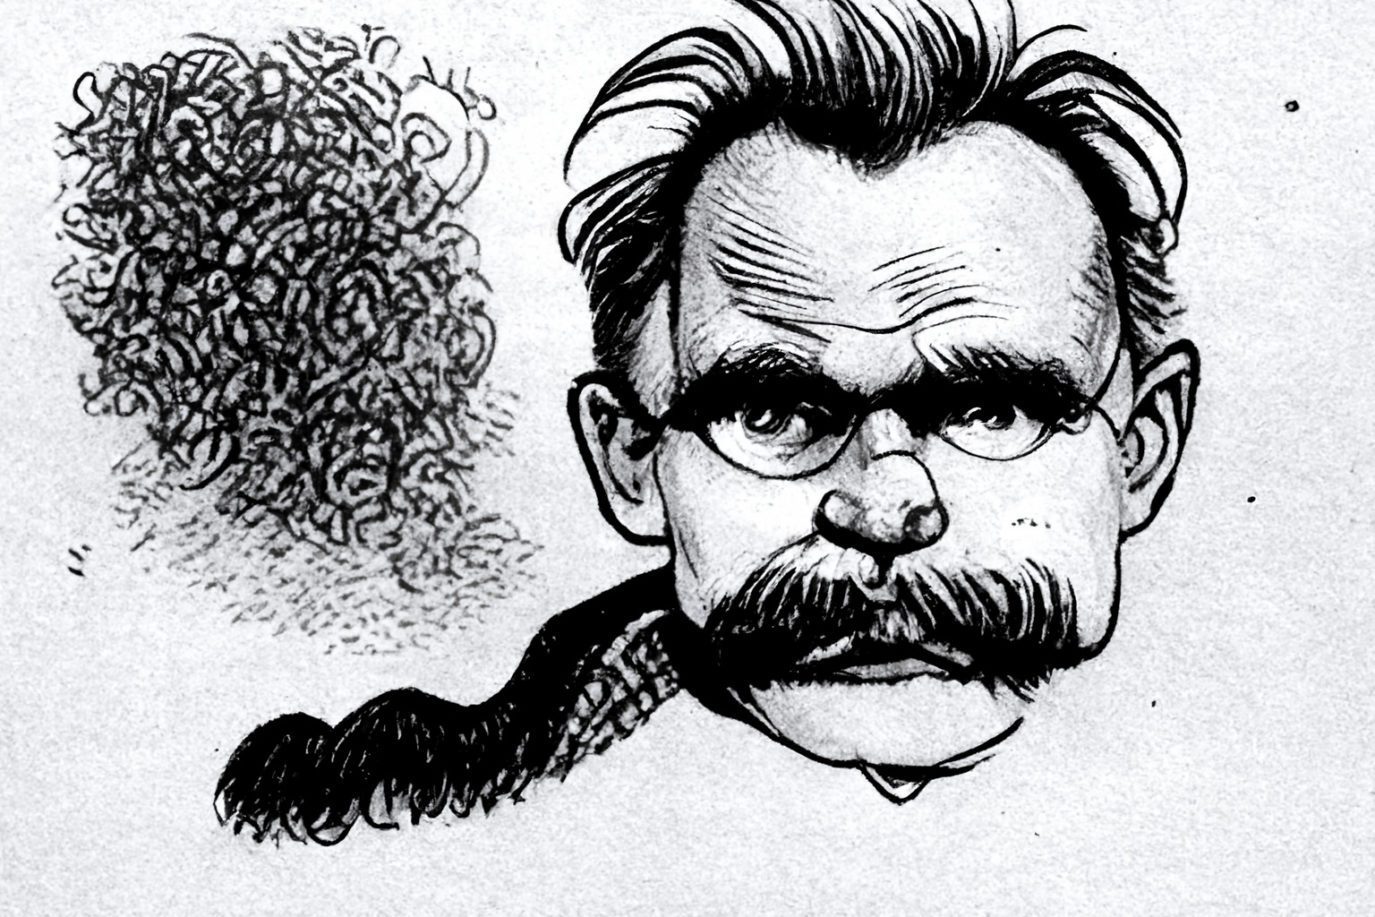 Nietzsches face